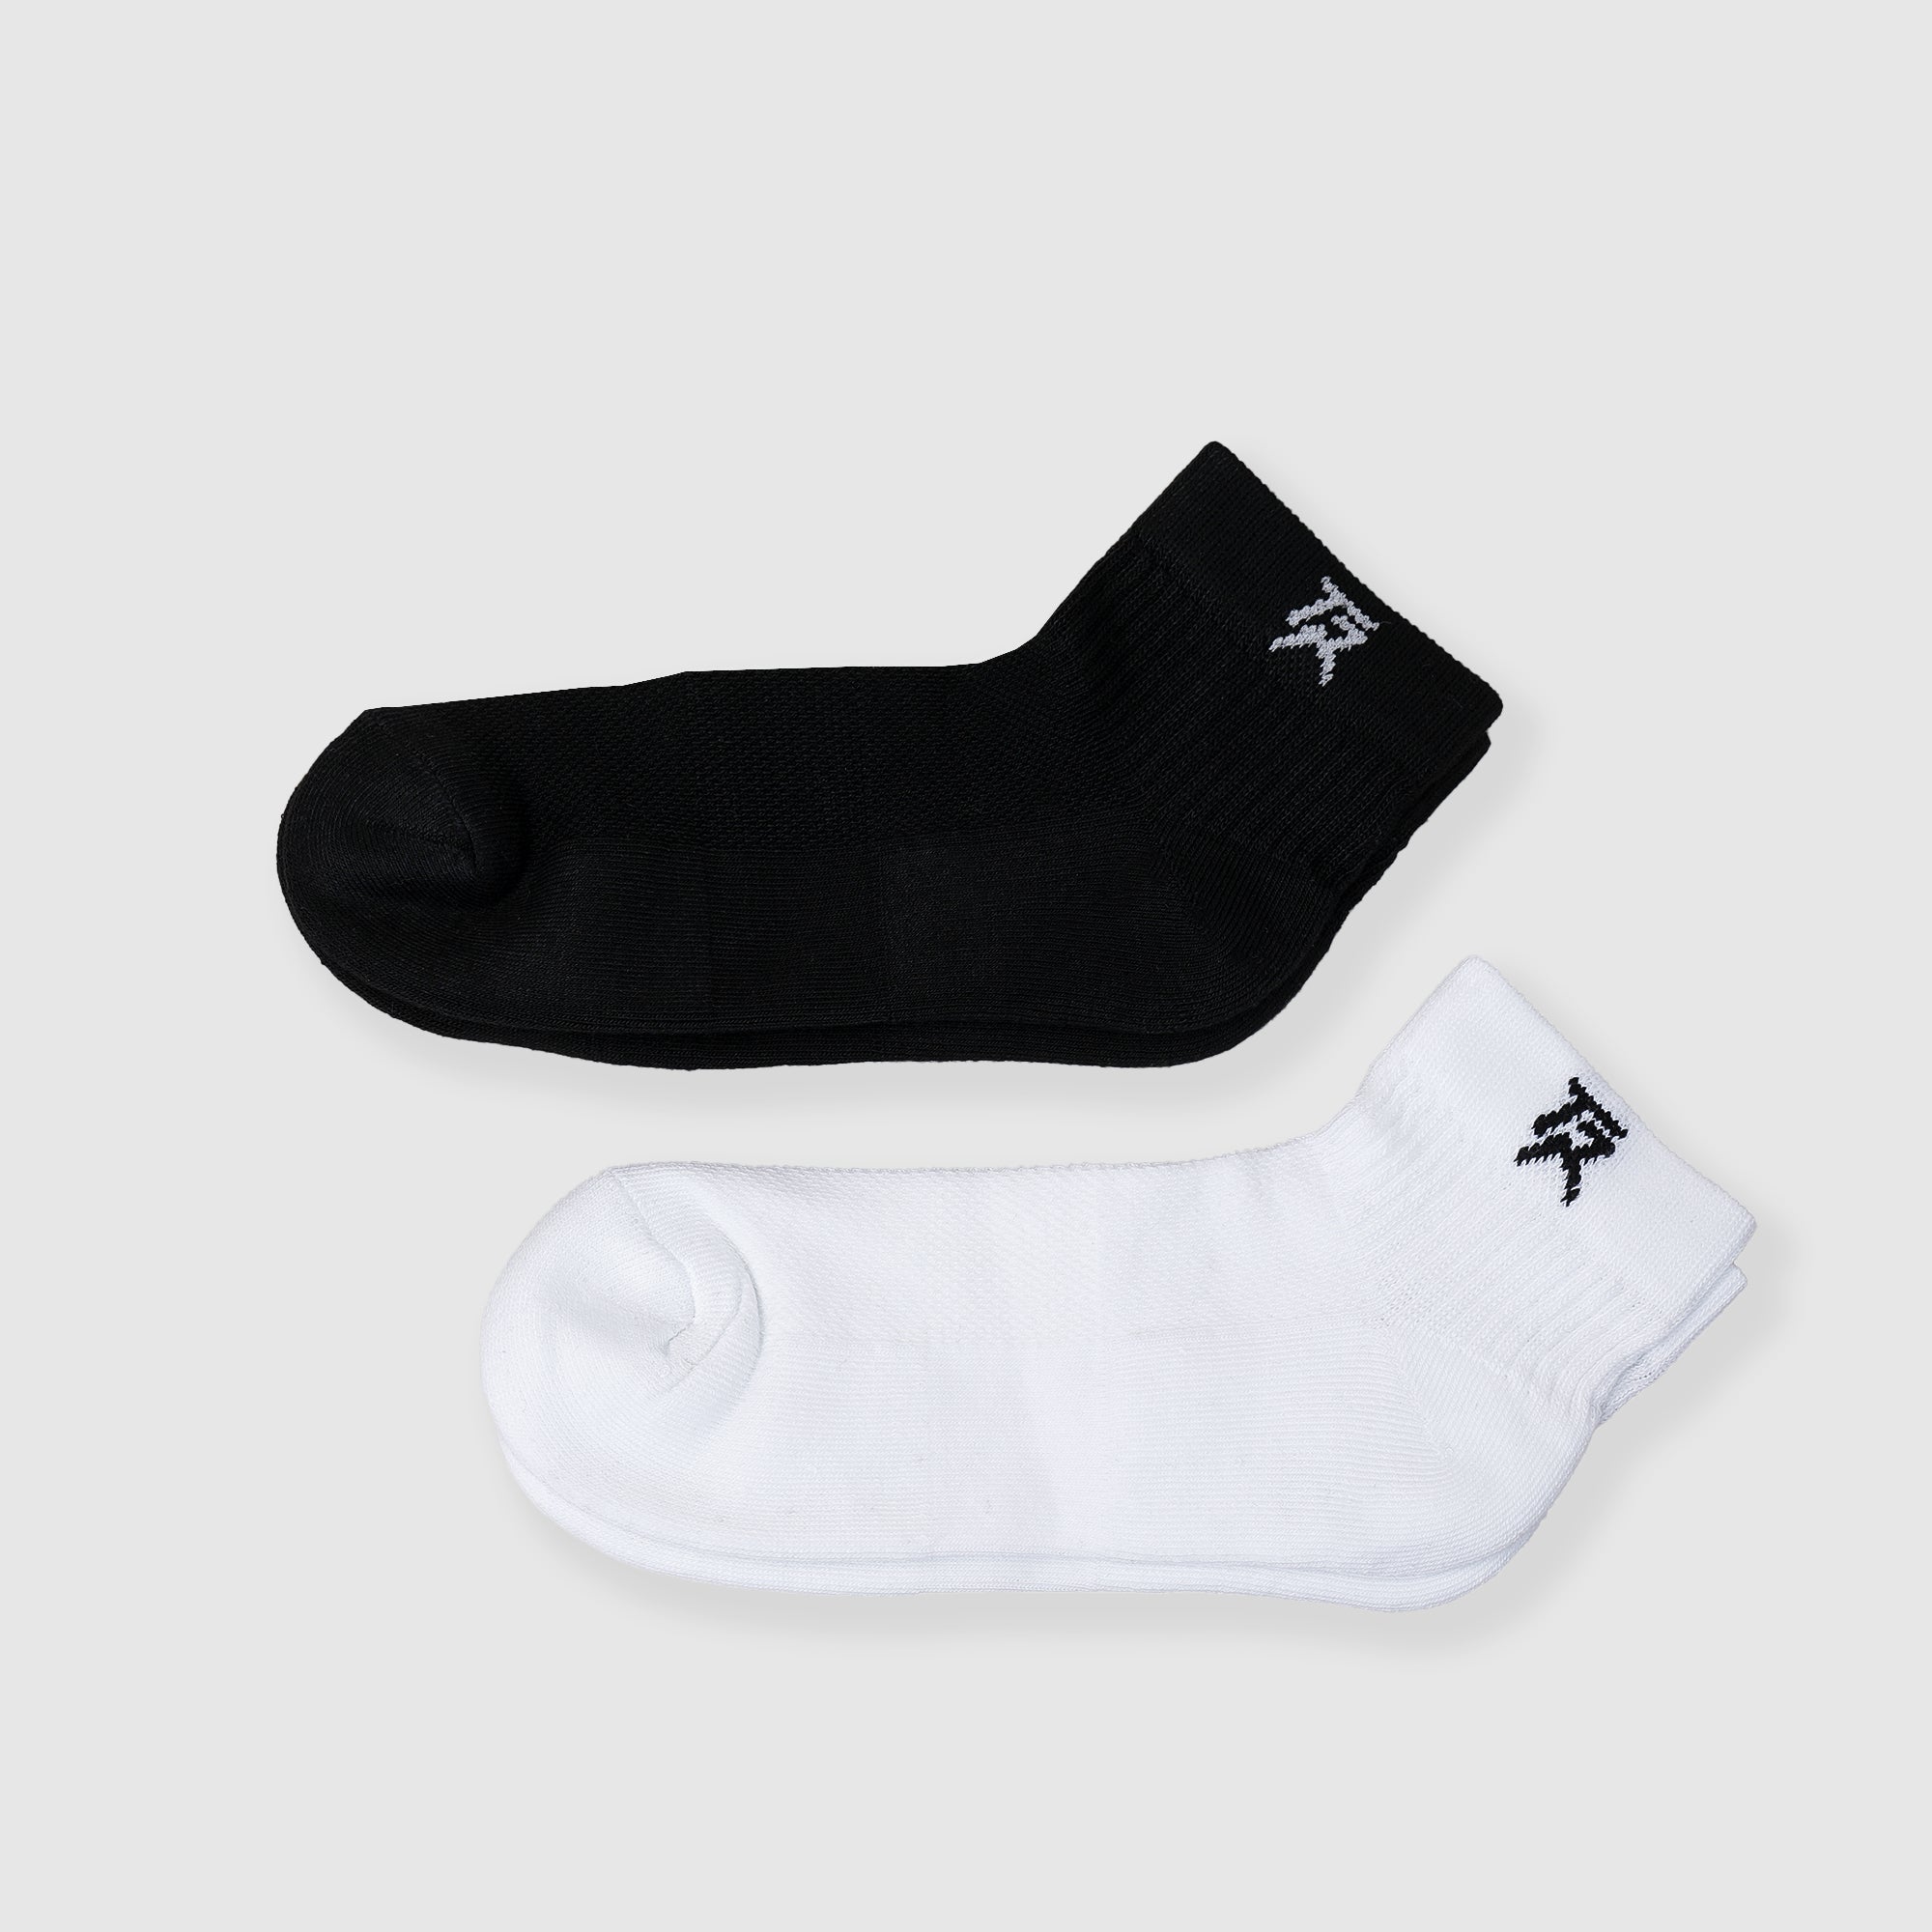 Sneakers Socks 2Pcs (Black + White)